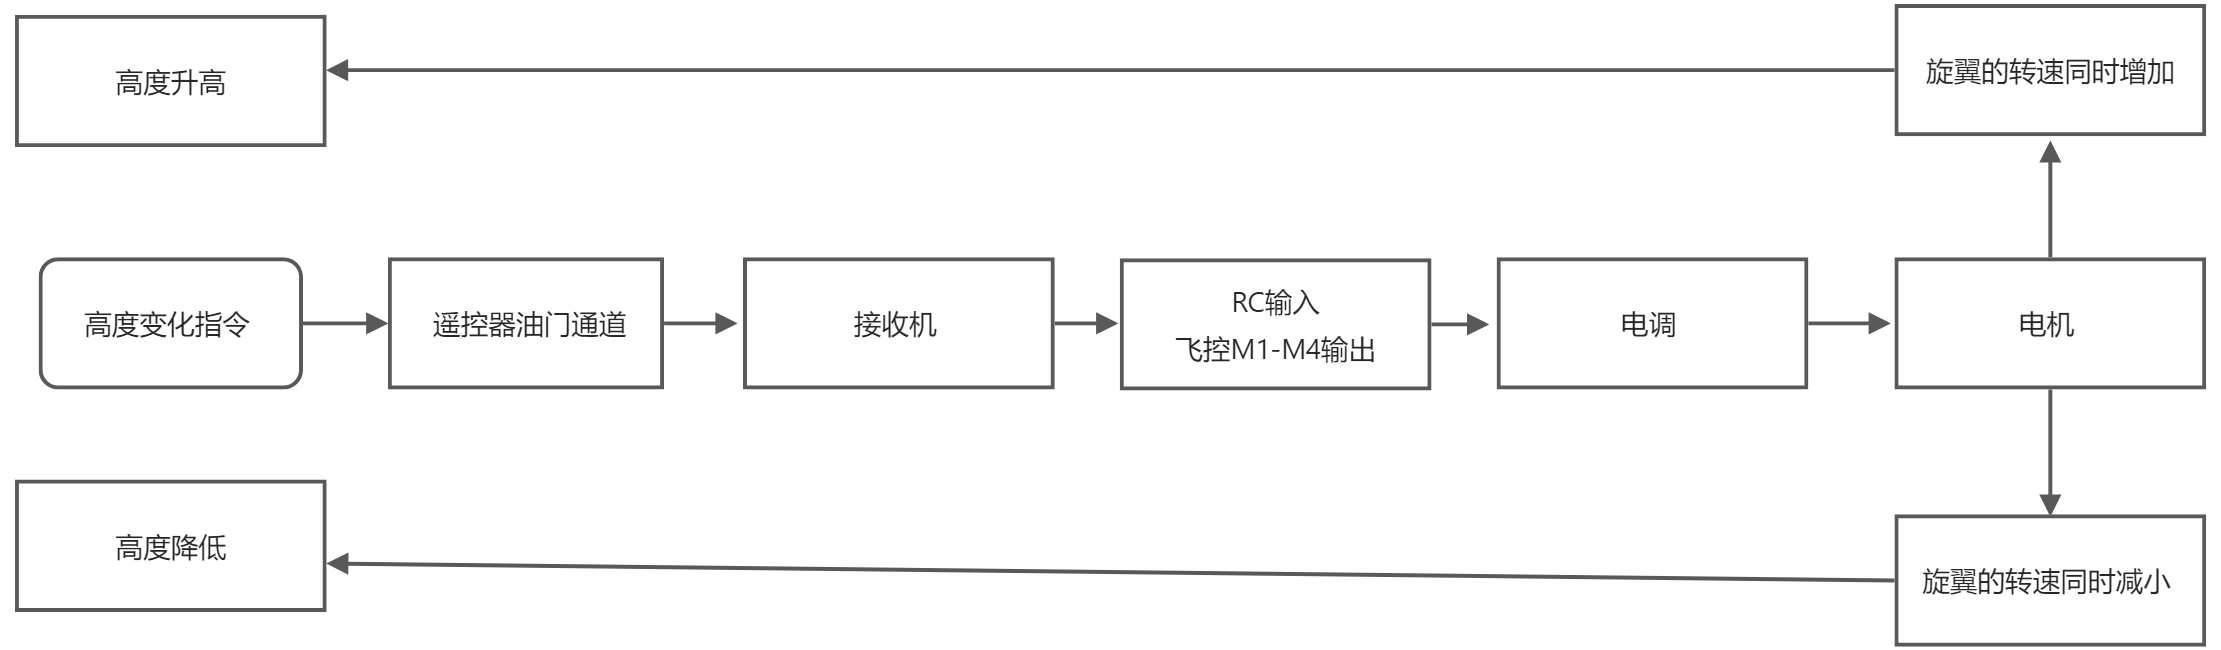 yuque_diagram(1).jpg